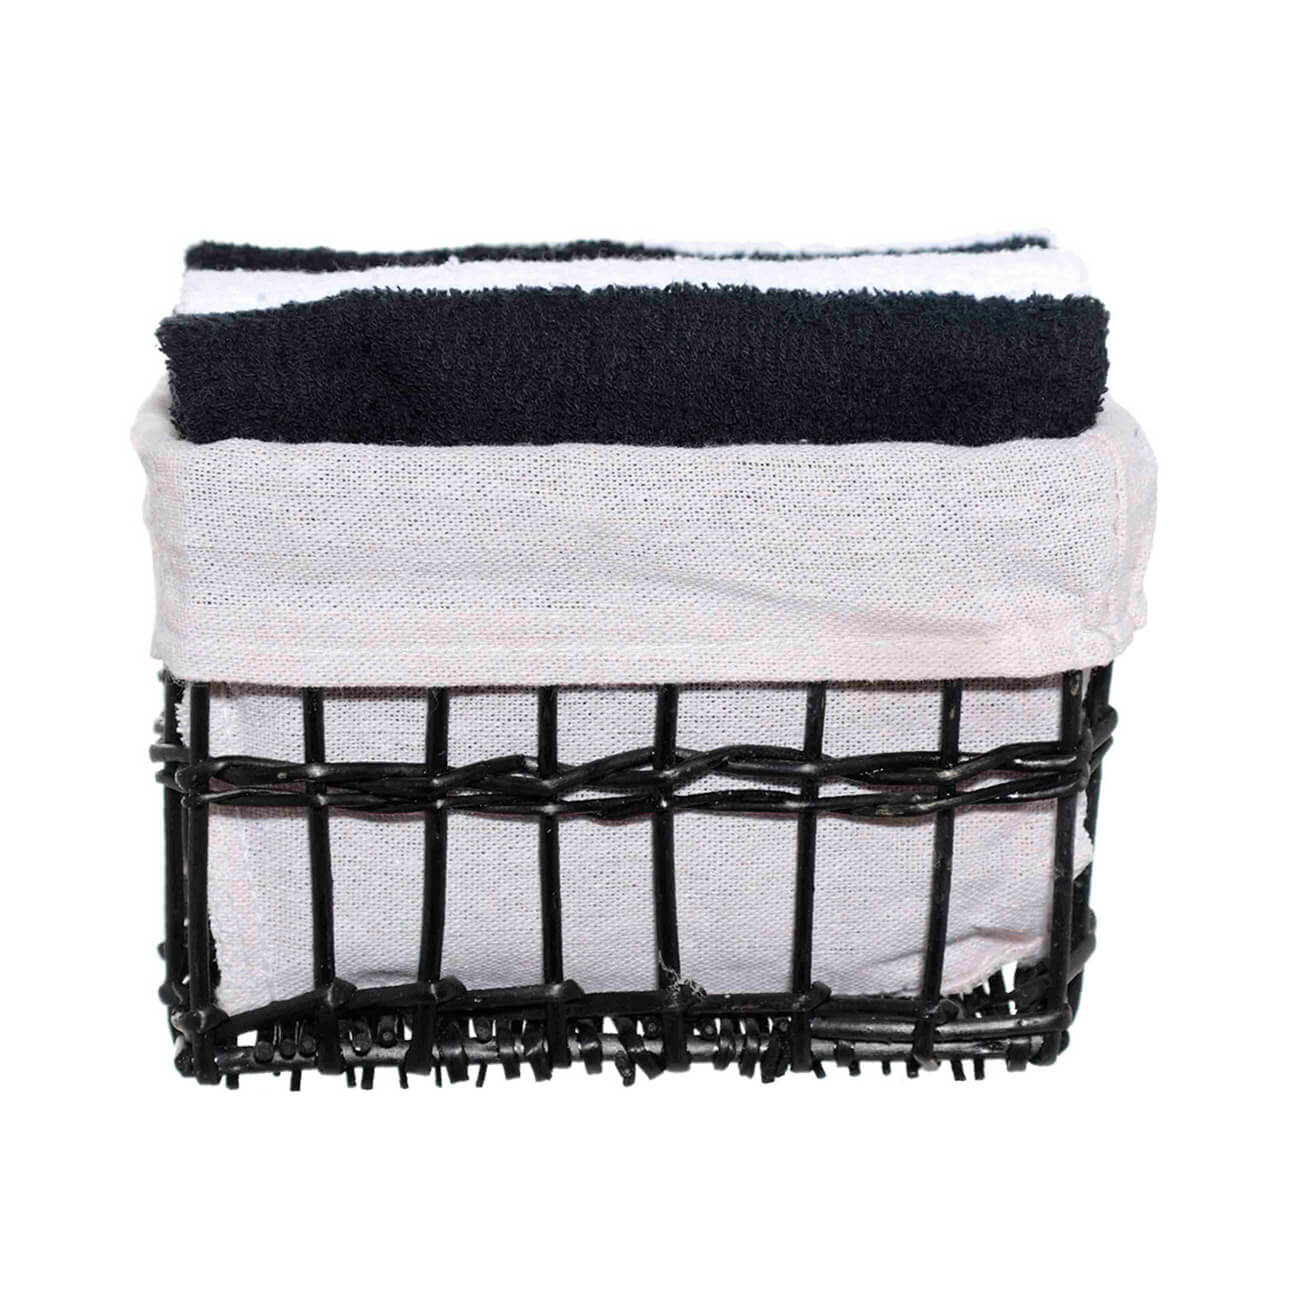 Полотенце, 30х30 см, 4 шт, в корзине, хлопок/лоза, черное/белое, Basket towel